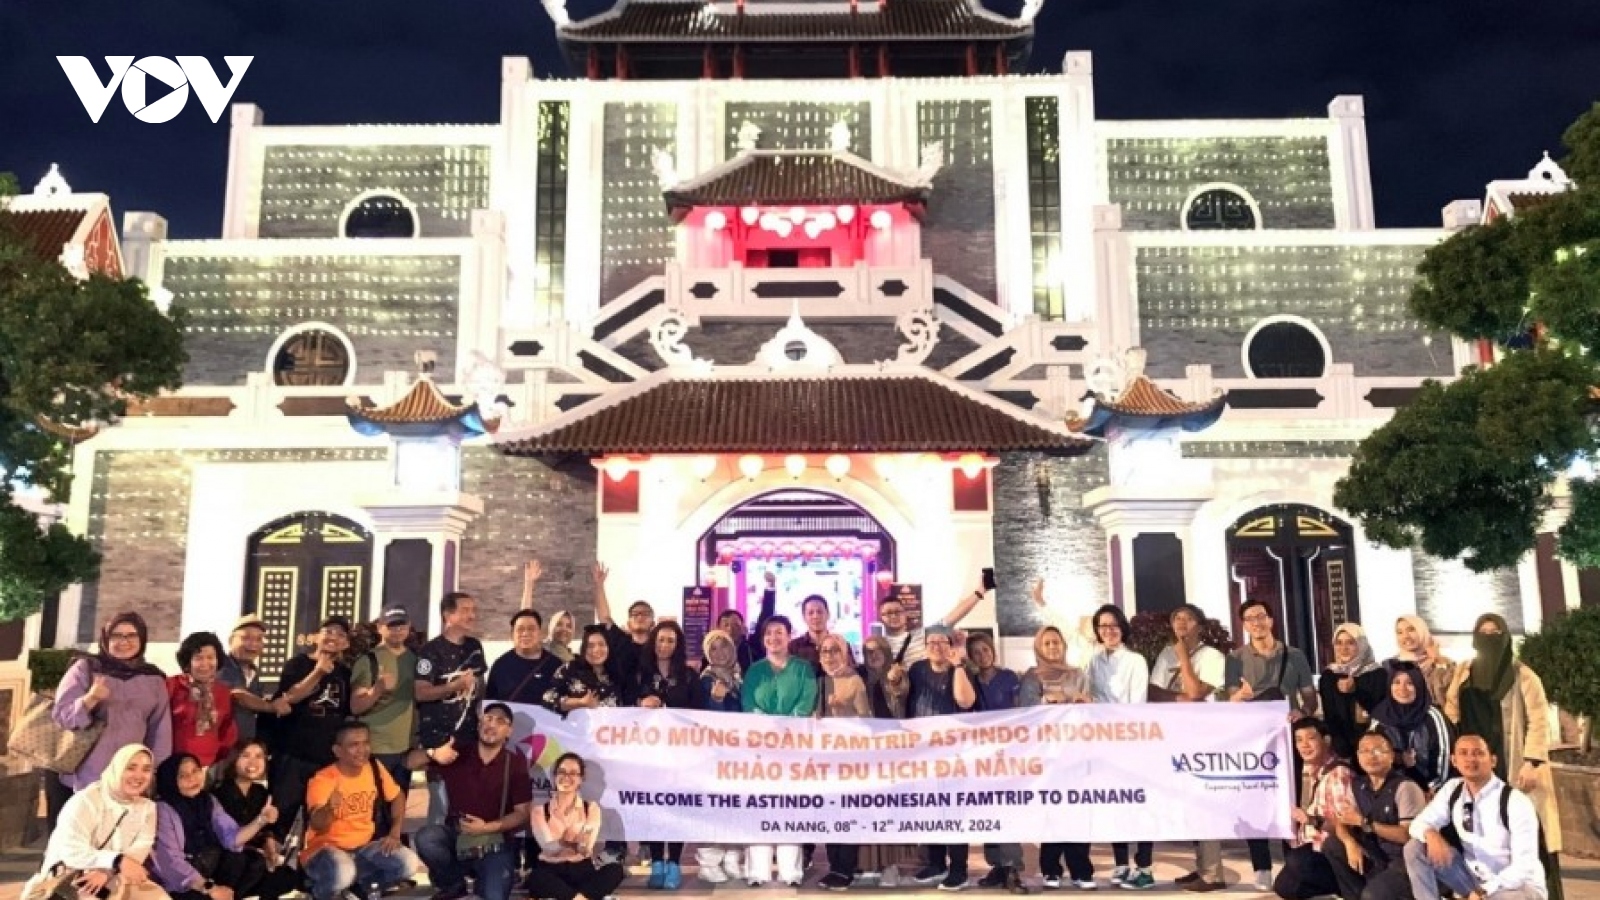 Indonesian famtrip delegation explores Da Nang